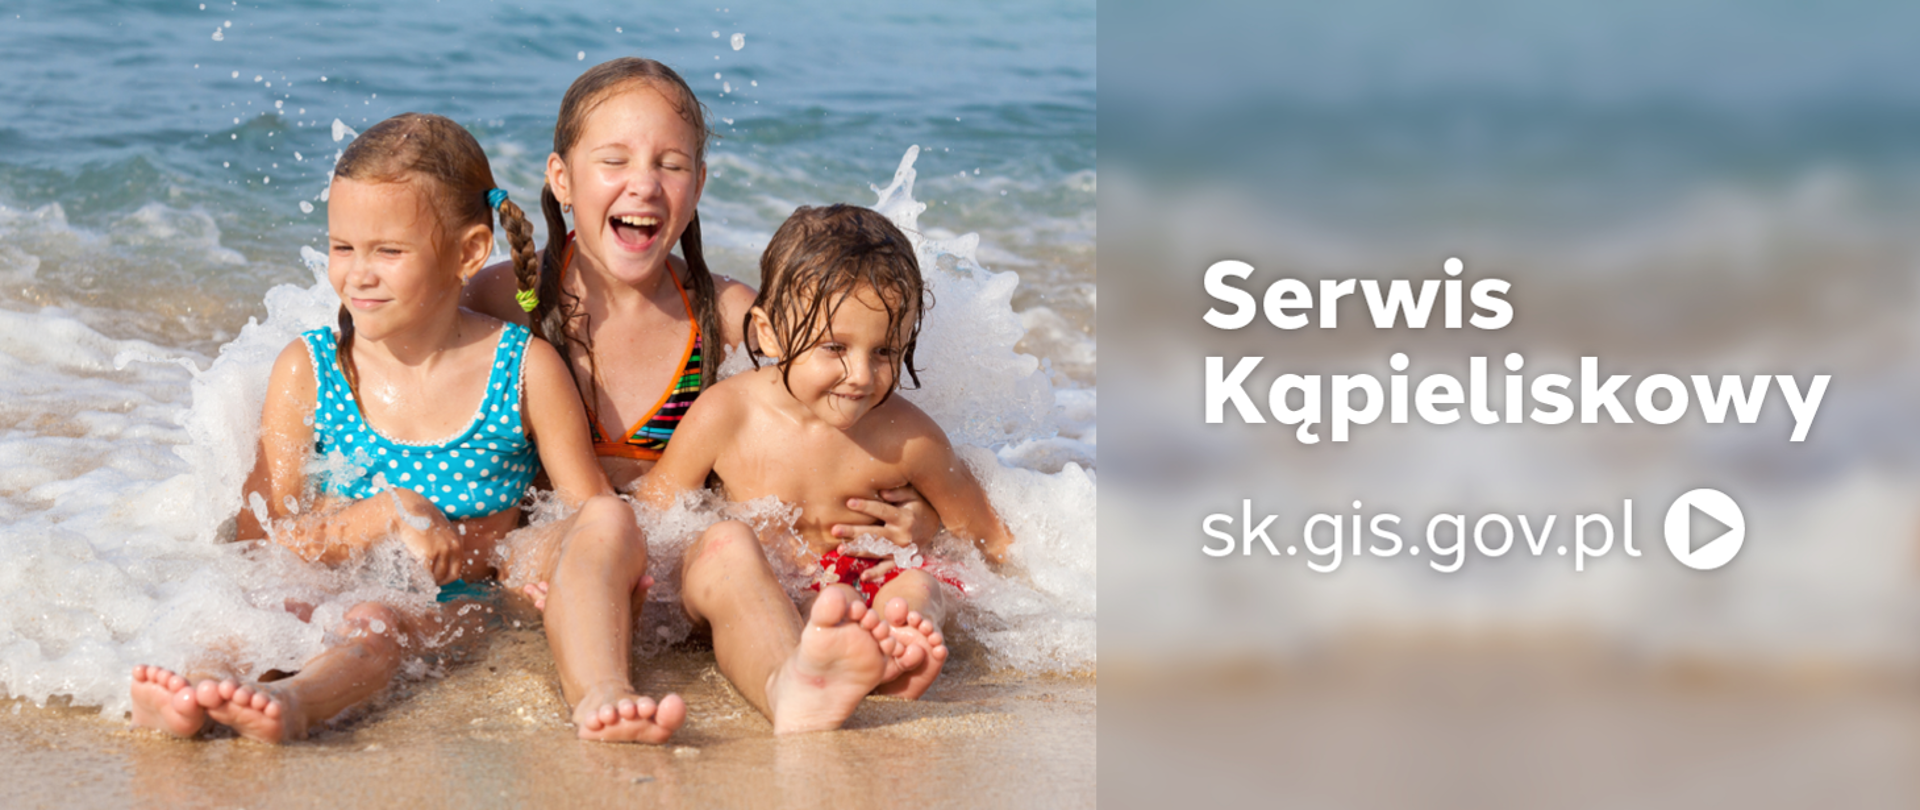 Serwis kąpieliskowy - sk.gis.gov.pl